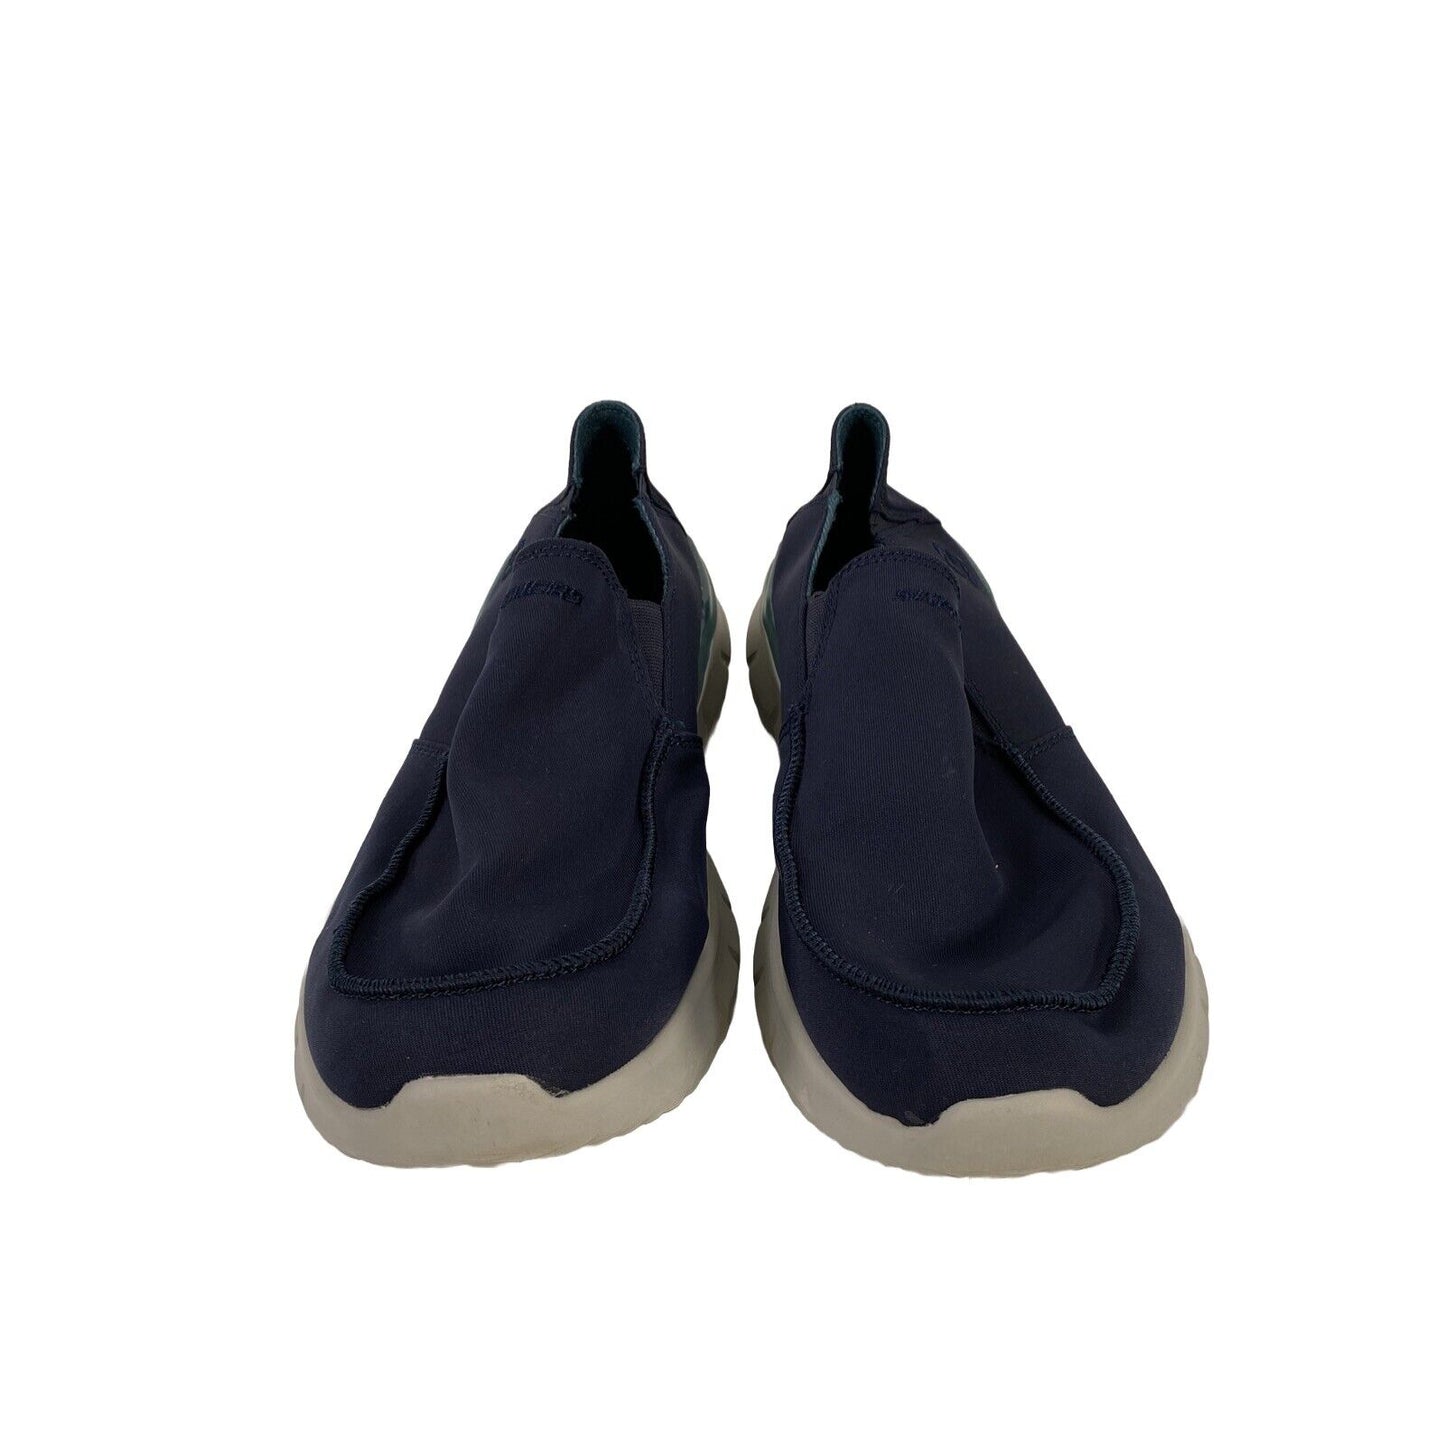 Skechers Mocasines refrigerados por aire Del Retto Alvert azul marino para hombre 210399 - 12